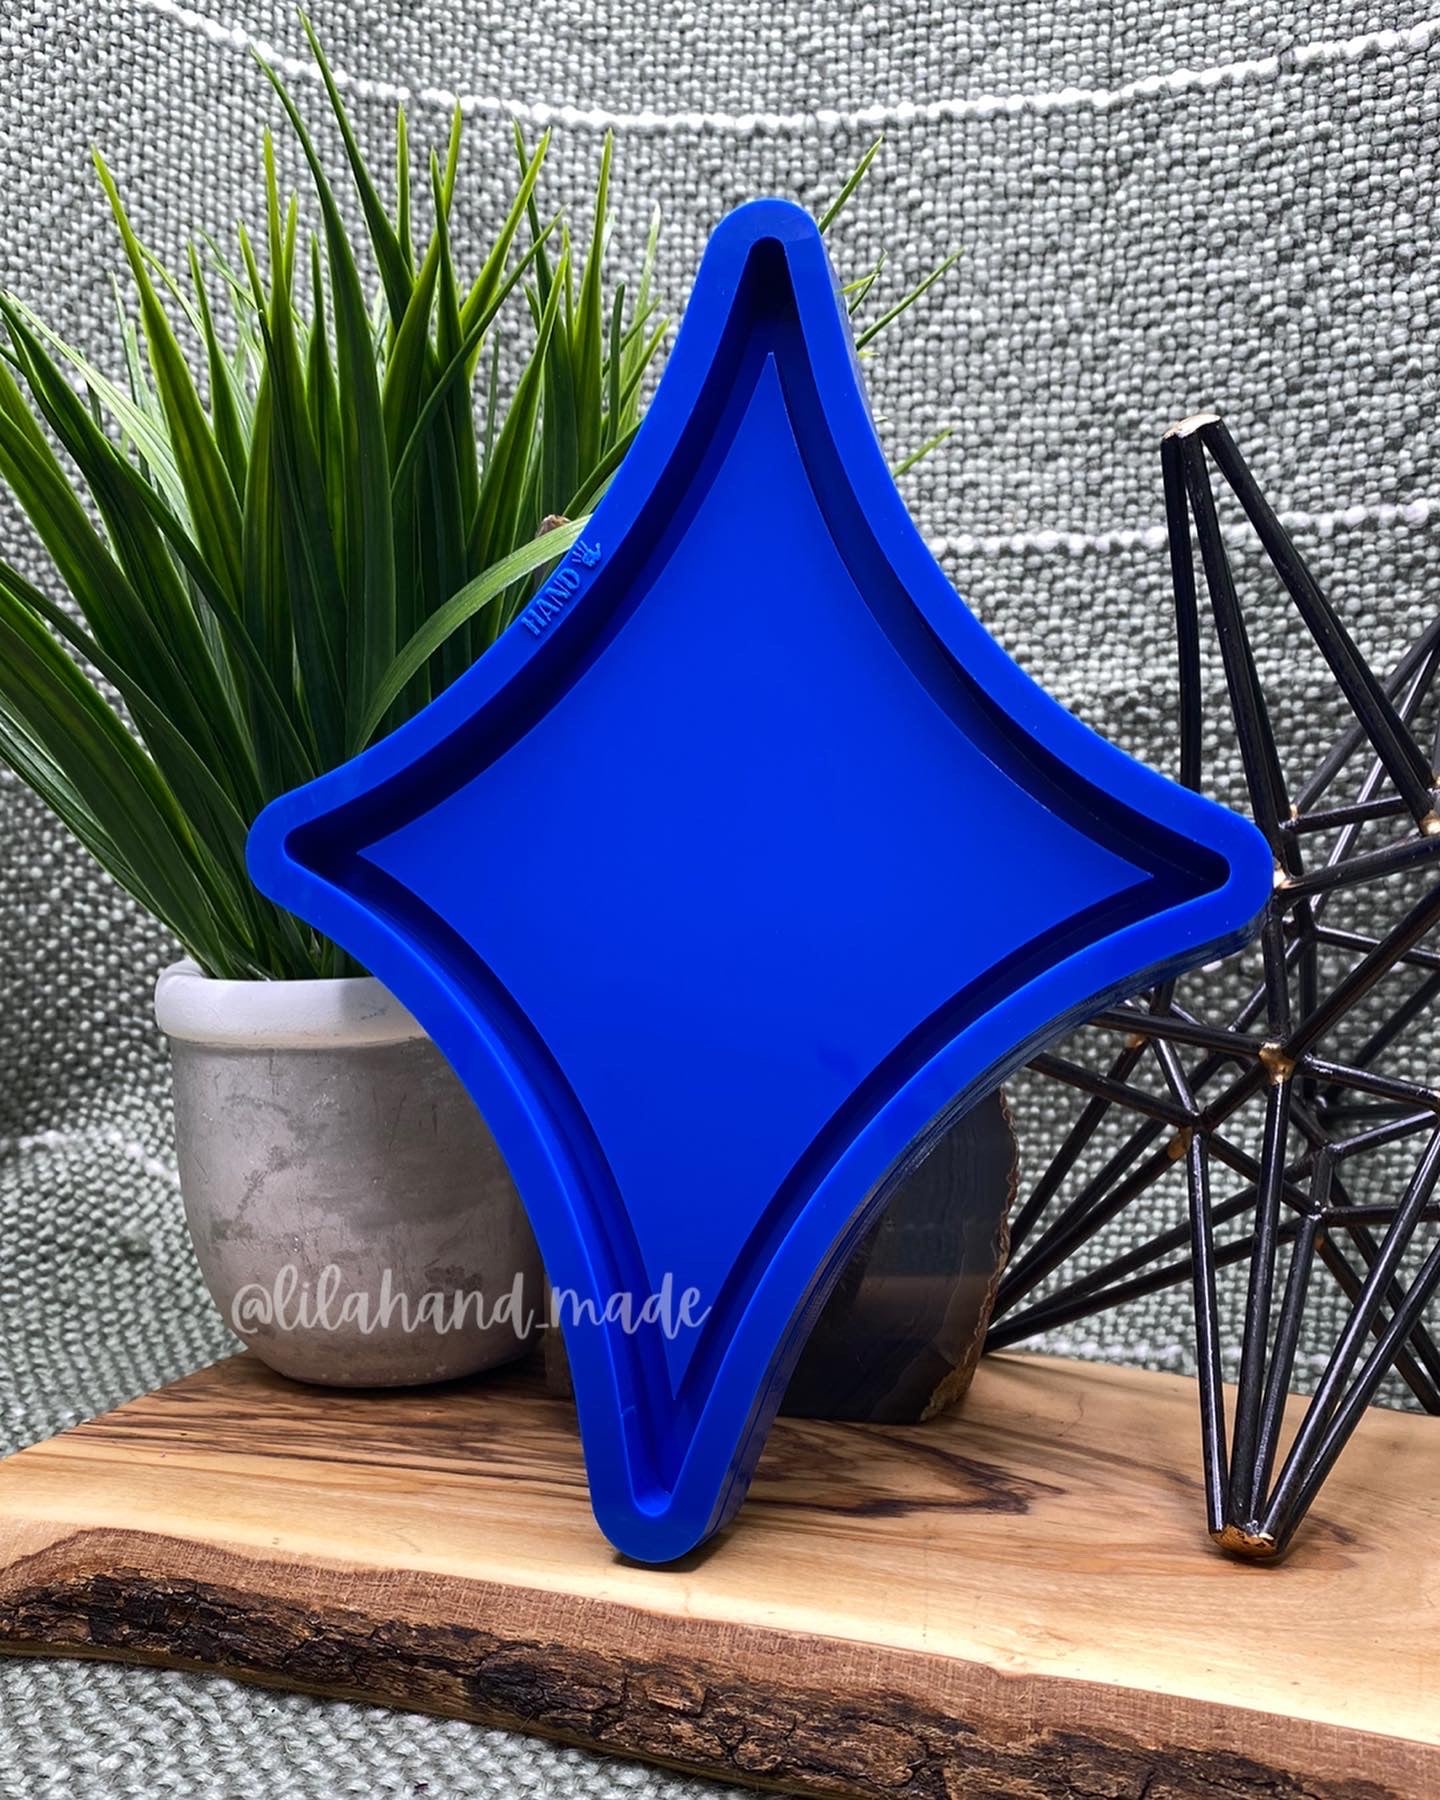 4-point star tray mold